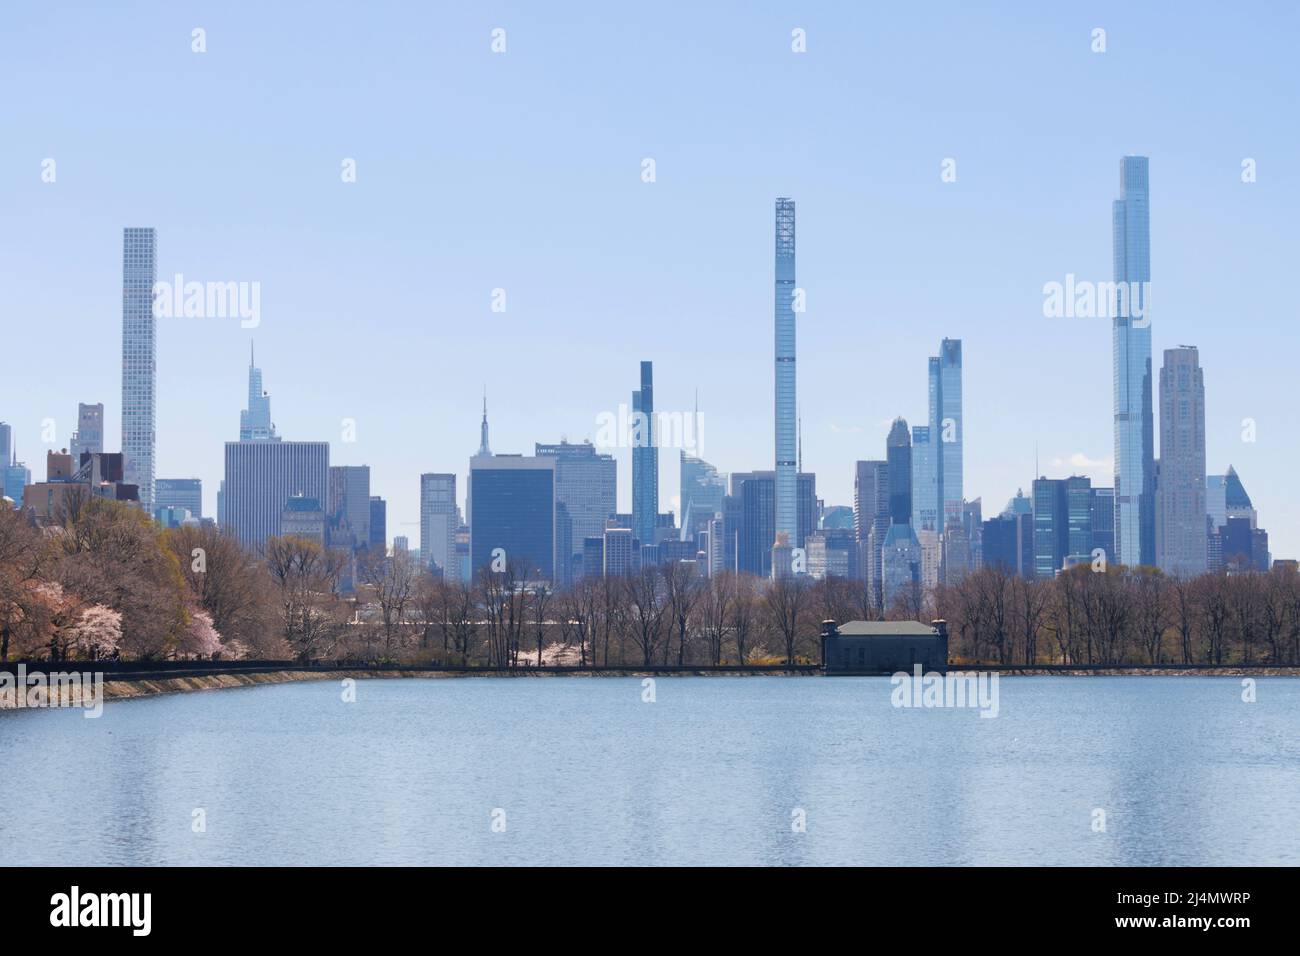 panorama de la ligne d'horizon du milliardaire, vue de l'autre côté du réservoir Central Park avec un ciel bleu clair Banque D'Images